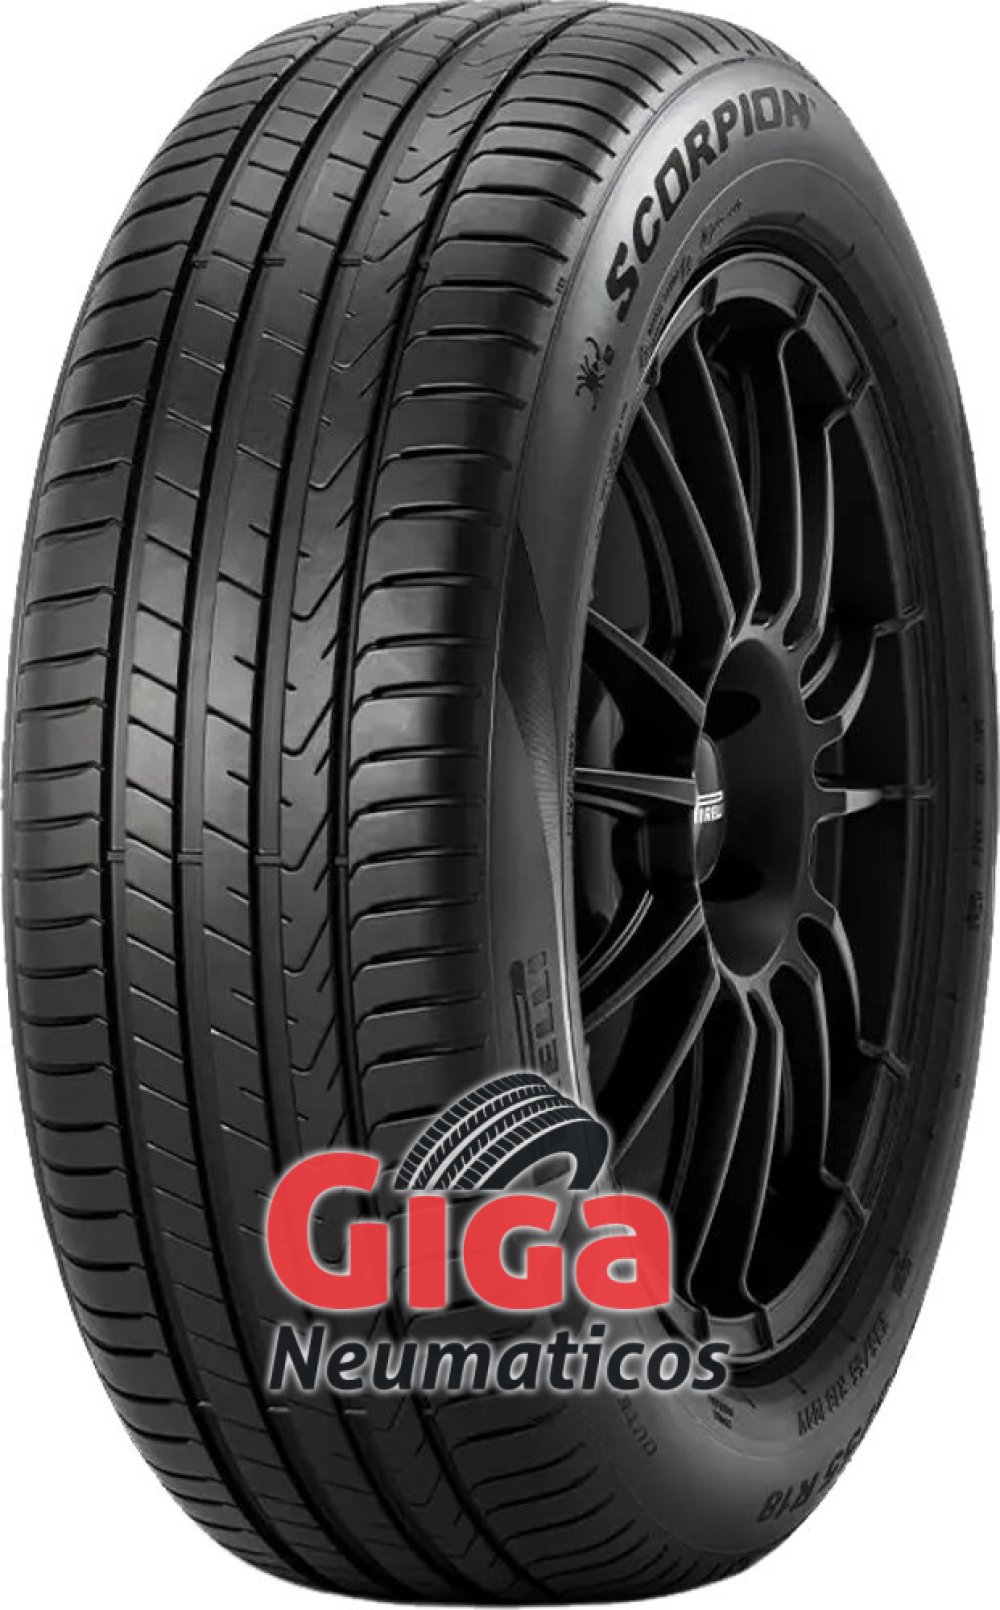 Galleta enjuague Permanecer de pié Comprar neumáticos Pirelli Scorpion 255/45 R19 100V a precios económicos -  giga-neumaticos.es